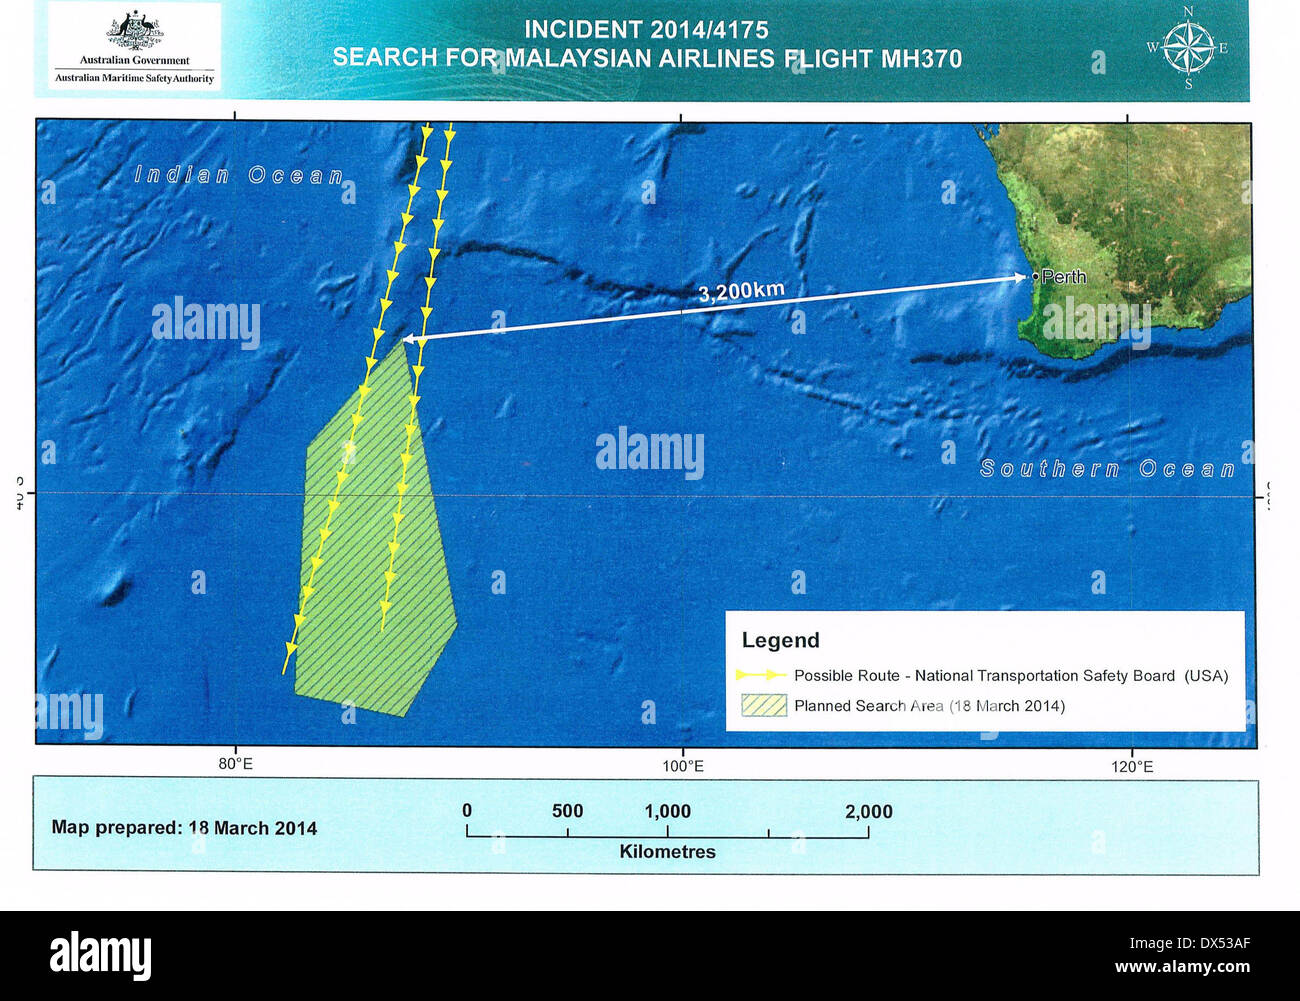 Canberra. Xviii Mar, 2014. La versione scansionata della mappa rilasciato il 18 marzo 2014 dalla Australian Maritime Safety Authority (AMSA) mostra prevista area di ricerca (area ombreggiata), la punta settentrionale della quale è 3.200 chilometri da Perth. Le frecce gialle indicano due possibili percorsi del piano mancante, secondo le analisi della National Transportation Safety Board degli Stati Uniti. AMSA ha detto martedì che l Australia ha iniziato le operazioni di ricerca mancante per la Malaysia Volo Aereo MH370 in un'area di 600.000 chilometri quadrati off Western Australian costa. Credito: Xinhua/Alamy Live News Foto Stock